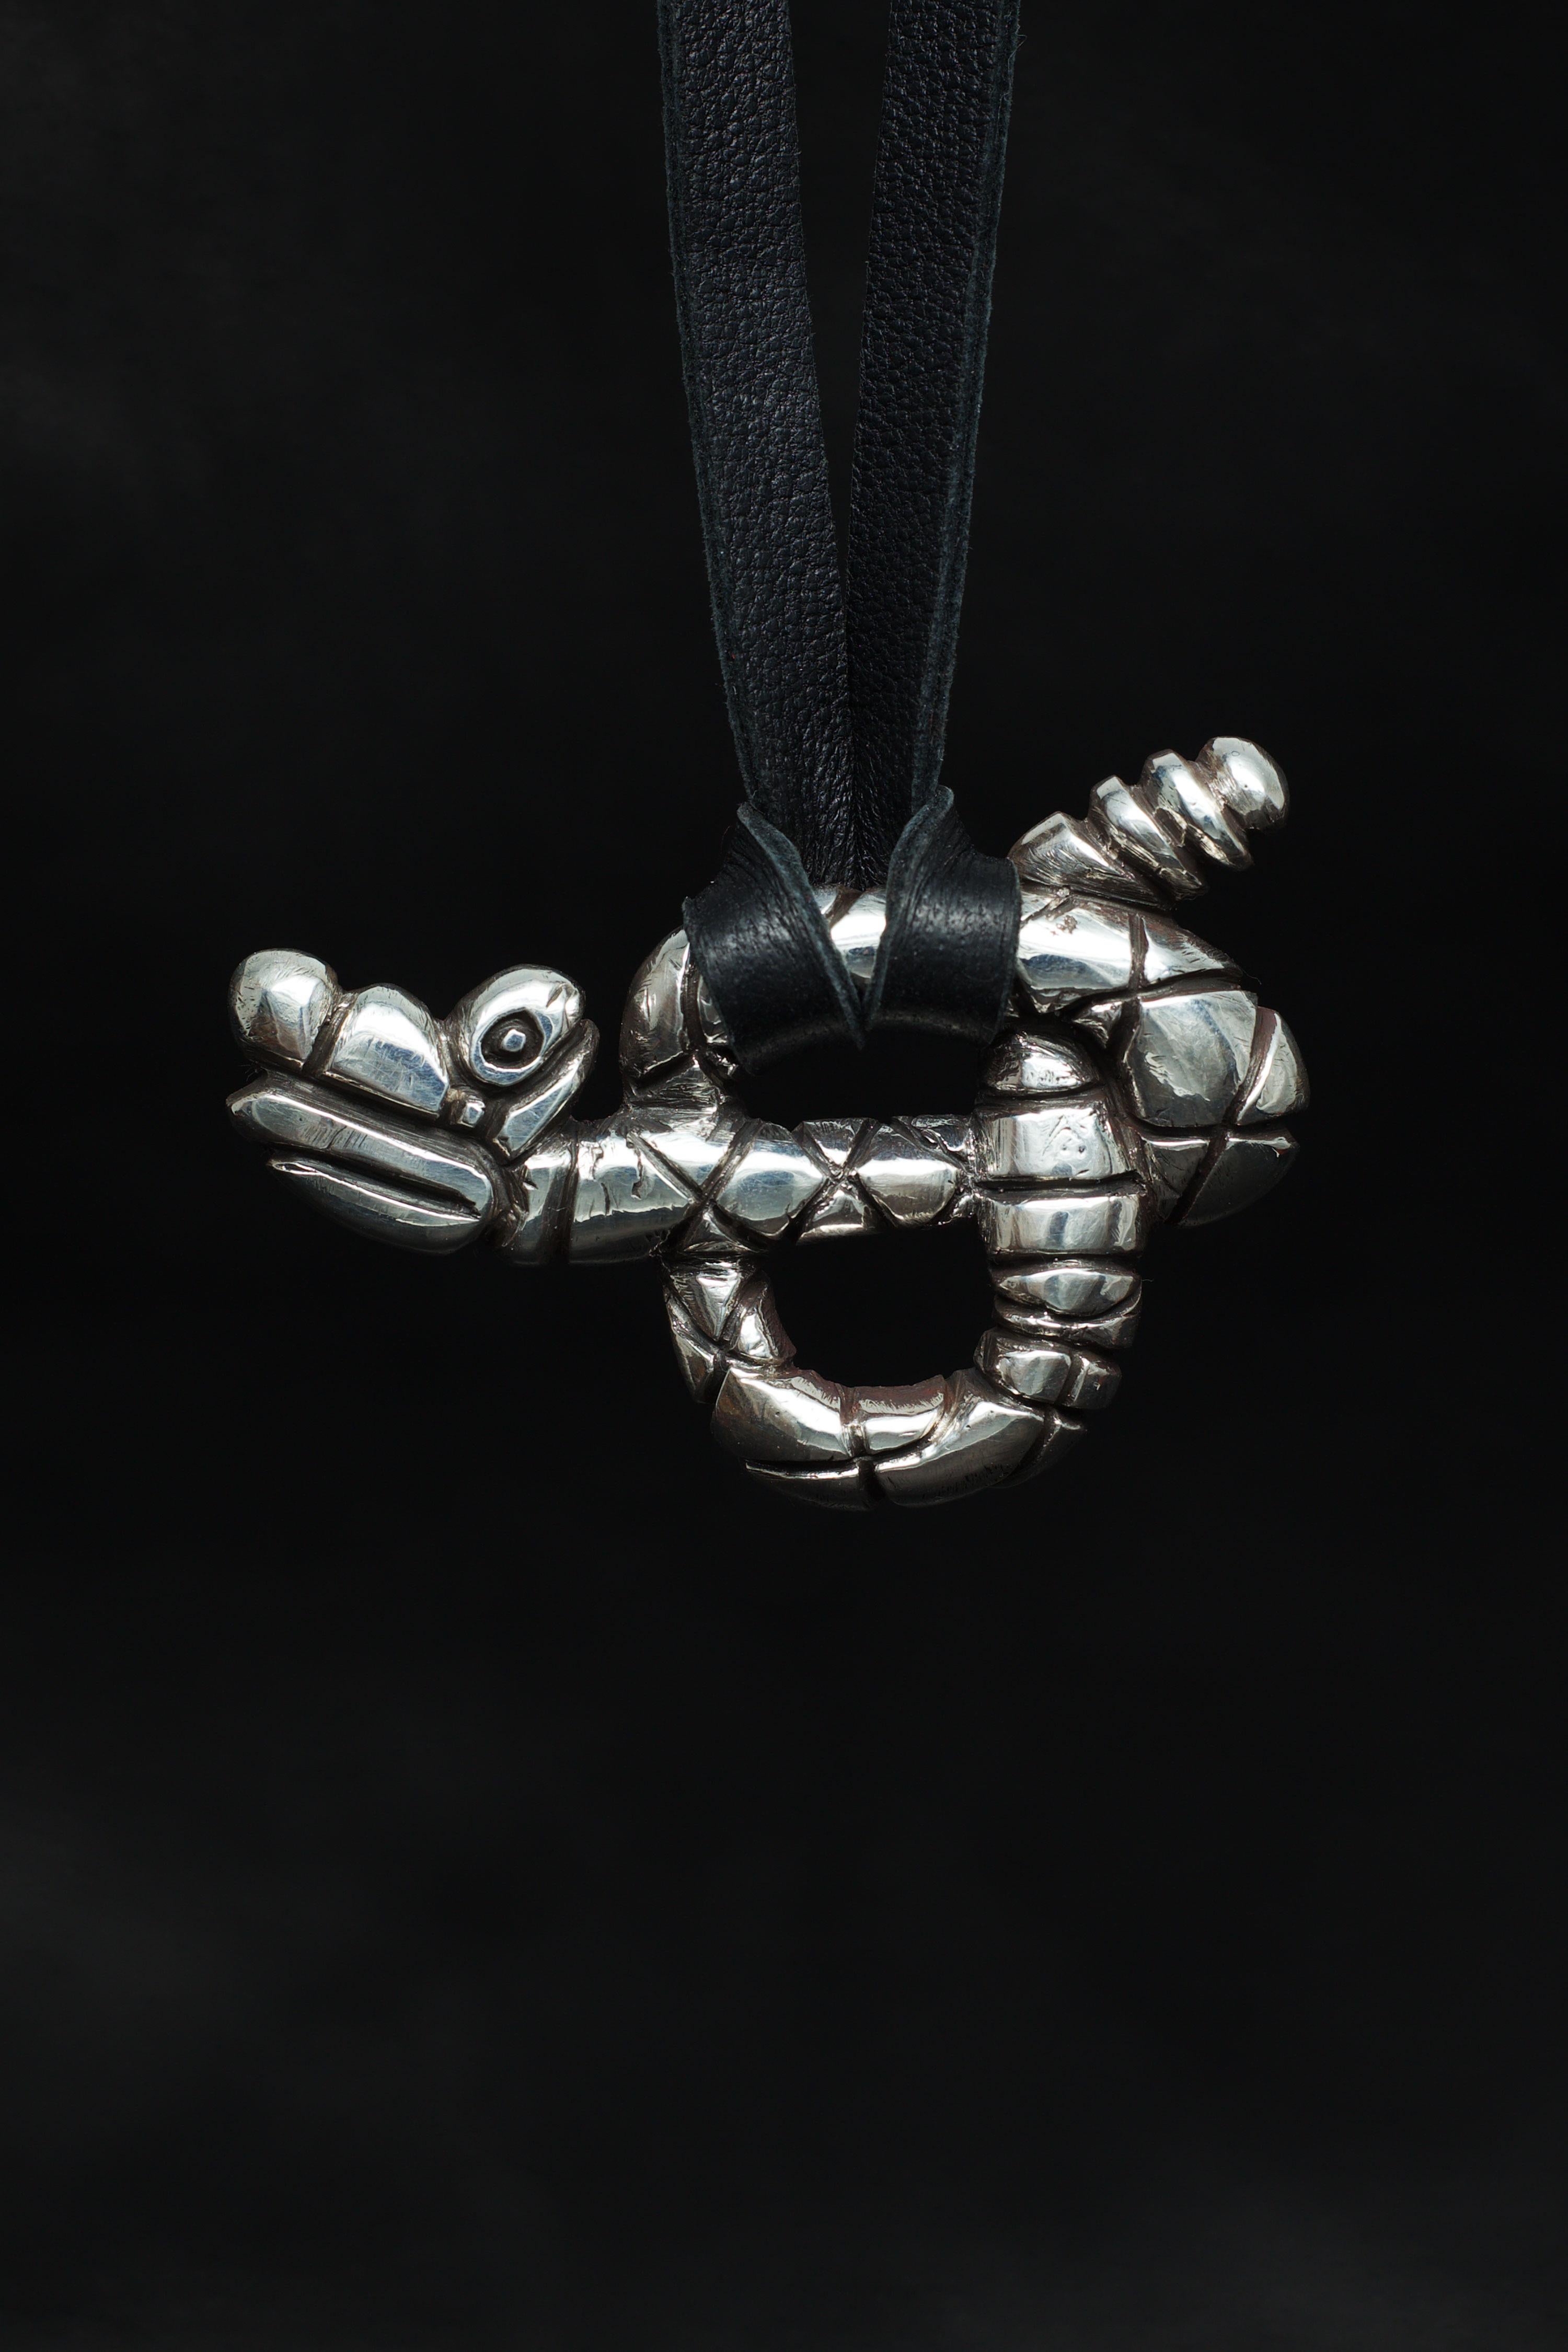 Der Rattlesnake-Anhänger von Ken Fury ist ein handgeschnitztes und gegossenes Stück, das die einzigartige Schönheit und Kraft dieser ikonischen nordamerikanischen Schlange einfängt. Mit seinen rautenförmigen Markierungen, dem gewundenen Körper und